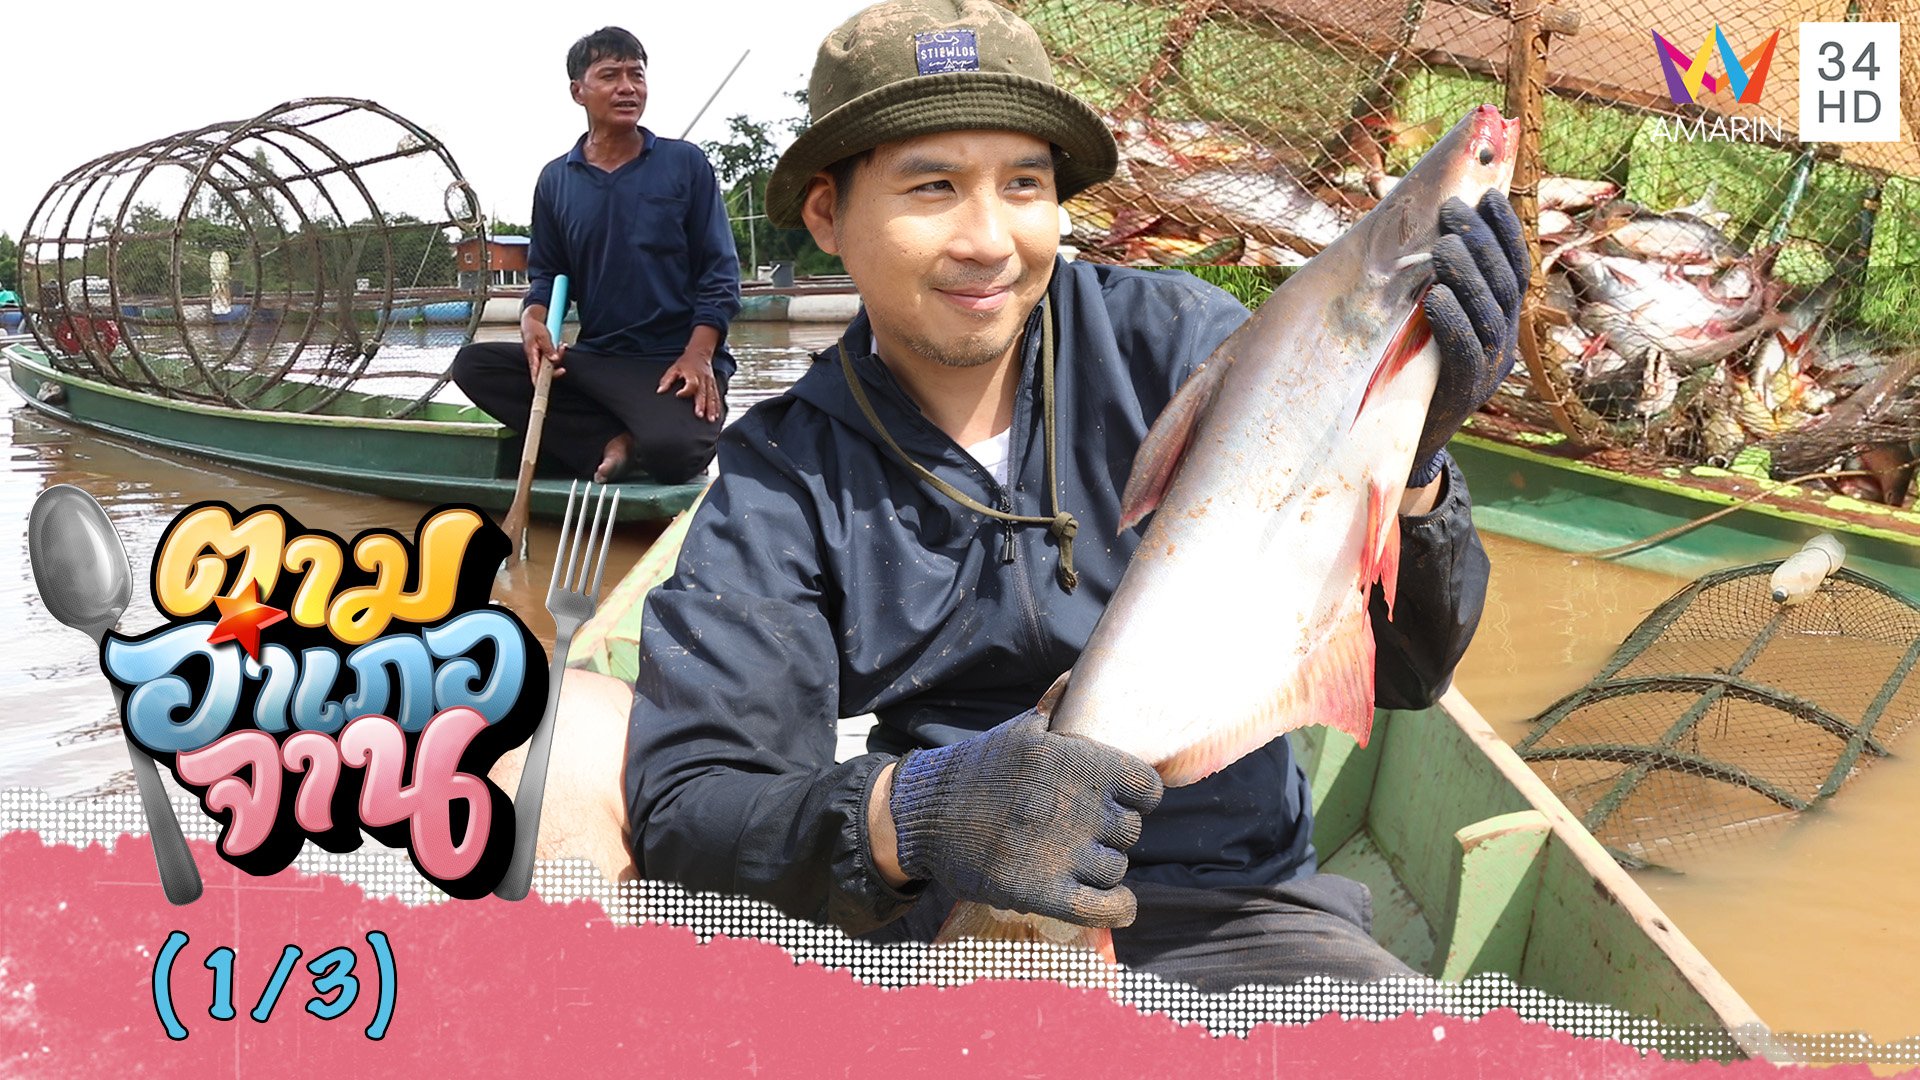 ลงเรือ ส่องวิธีหาปลาน้ำจืดด้วย ลอบปลา | ตามอำเภอจาน | 12 พ.ย. 65 (1/3) | AMARIN TVHD34